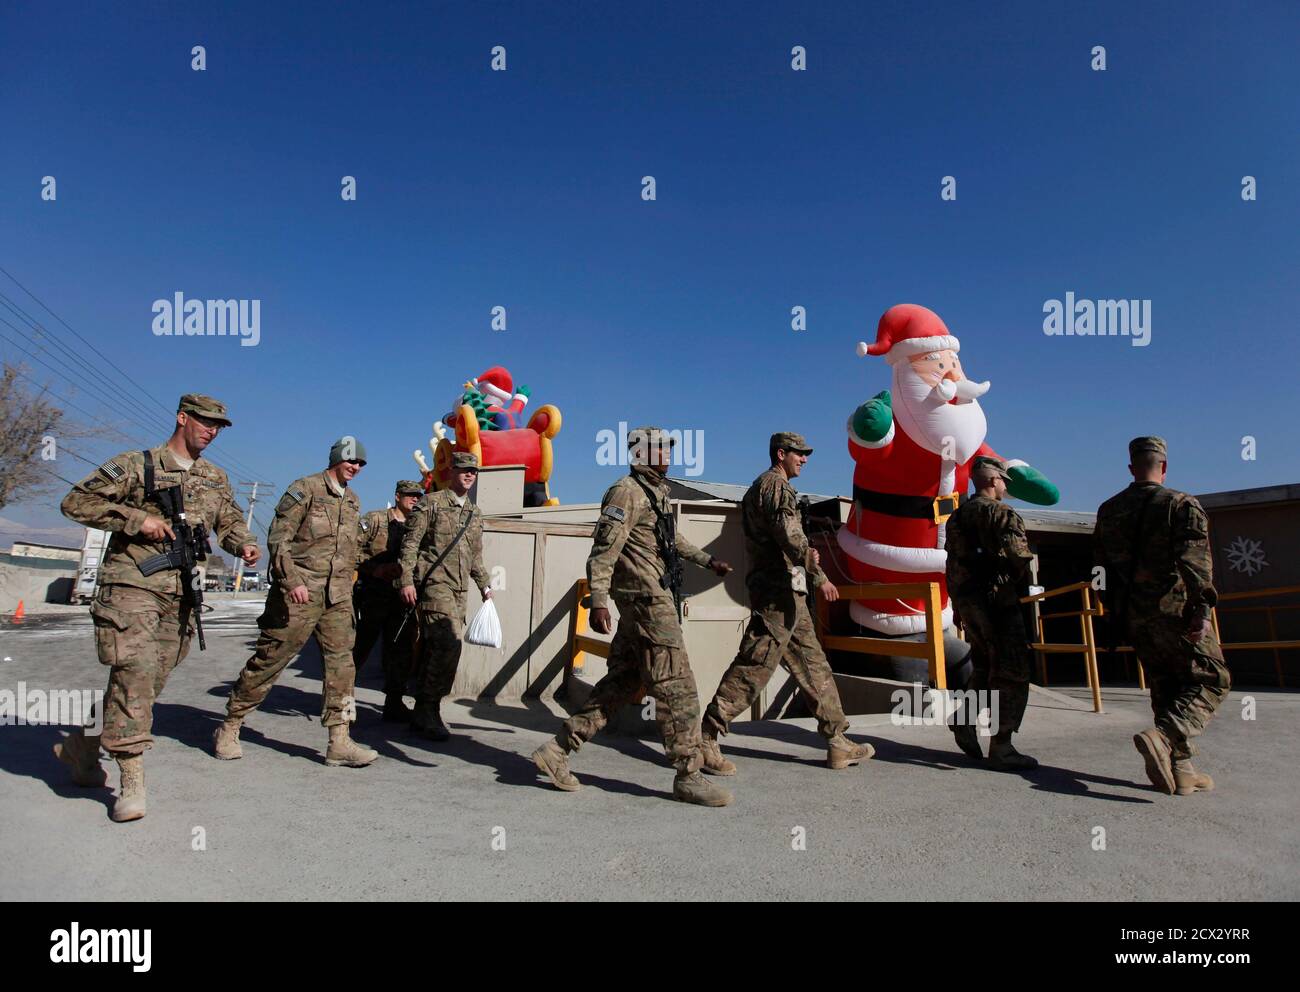 NATO-Truppen von der International Security Assistance Force (ISAF) Wanderung bei Weihnachtsfeiern in Bagram Airfield, nördlich von Kabul, 25. Dezember 2013. REUTERS/Mohammad Ismail (AFGHANISTAN - Tags: militärische Gesellschaft) Stockfoto